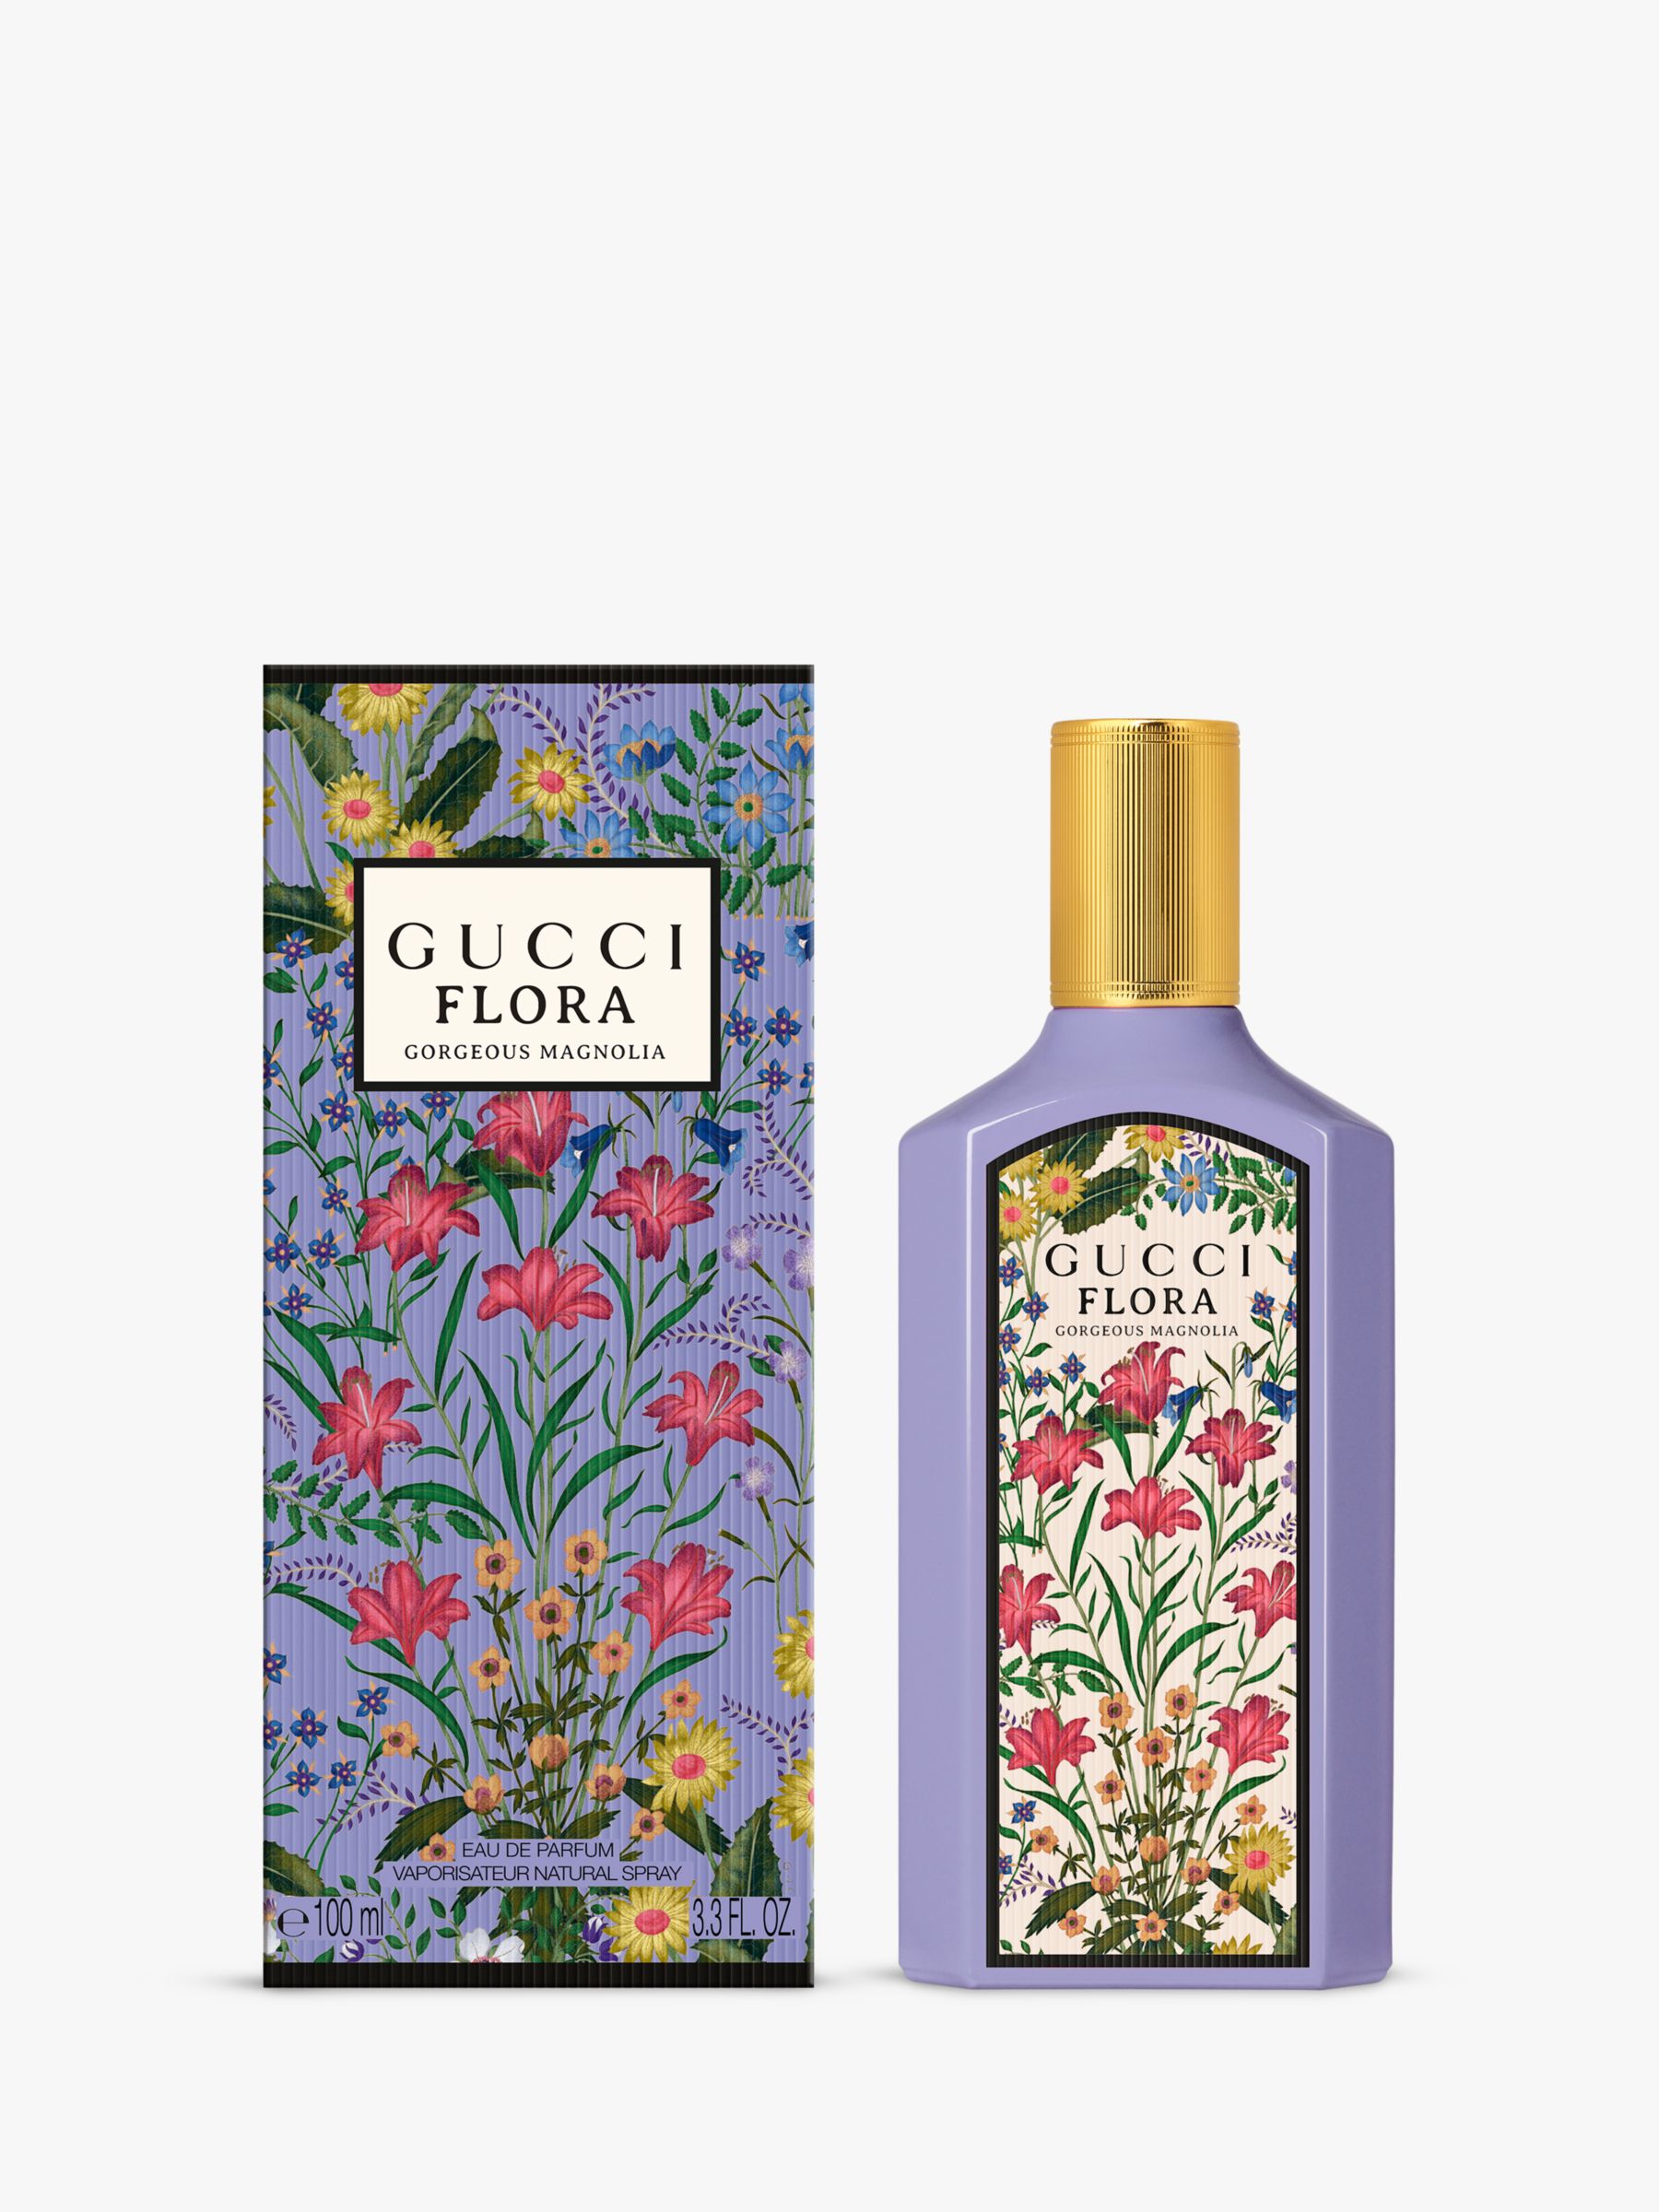 Gucci Flora Gorgeous Magnolia Eau de Parfum for Women, 100ml